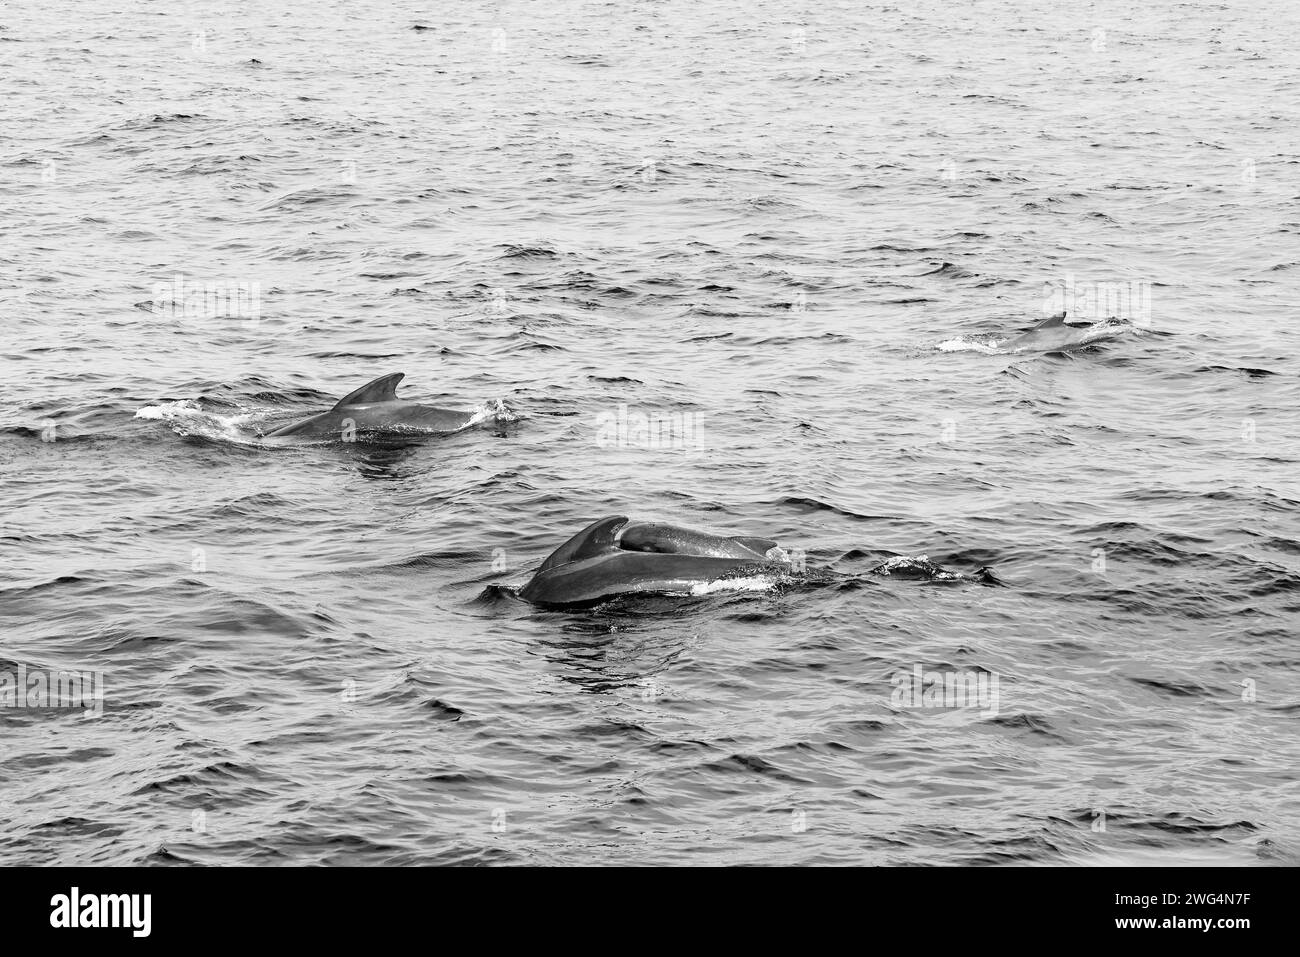 Les tons monochromatiques de la mer mettent en évidence une nacelle de baleines pilotes, avec un veau parmi eux, dans les eaux texturées au large d'Andenes, Norvège photo vintage Banque D'Images